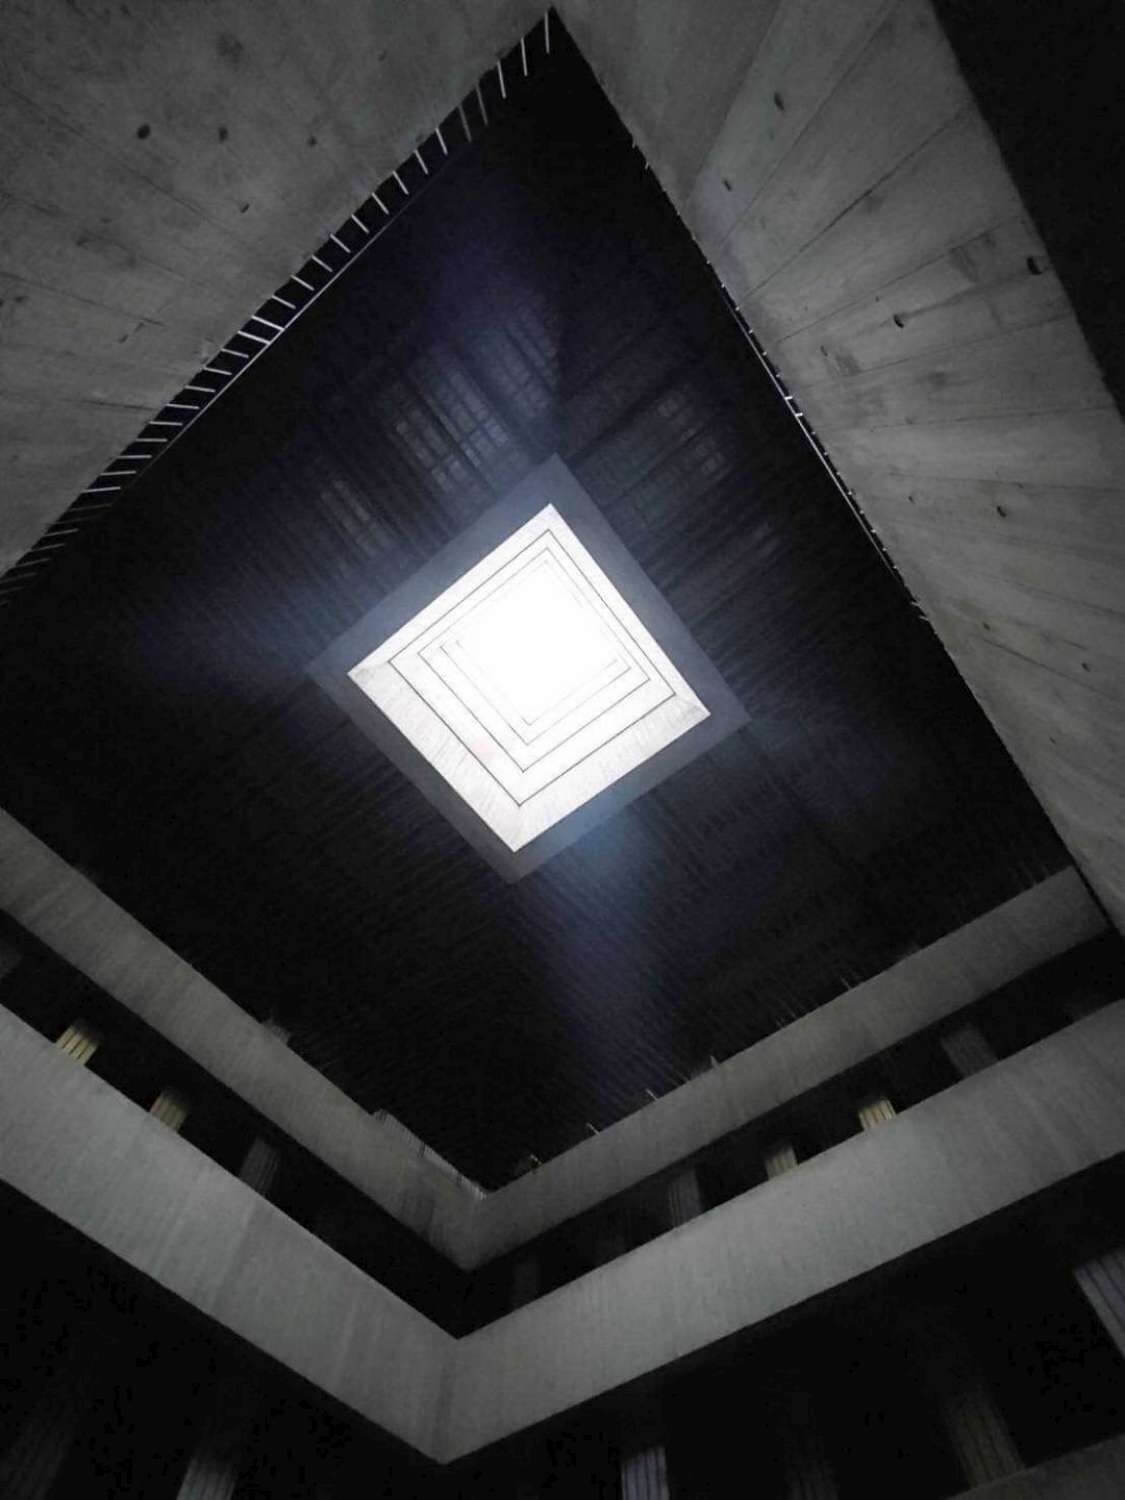 林友寒建築師以無樑柱的設計工法搭配天井，讓整體空間更為通透與開放，藉由無死角的空間安排，驅散人們的恐懼，打造開放、光線流動的空間